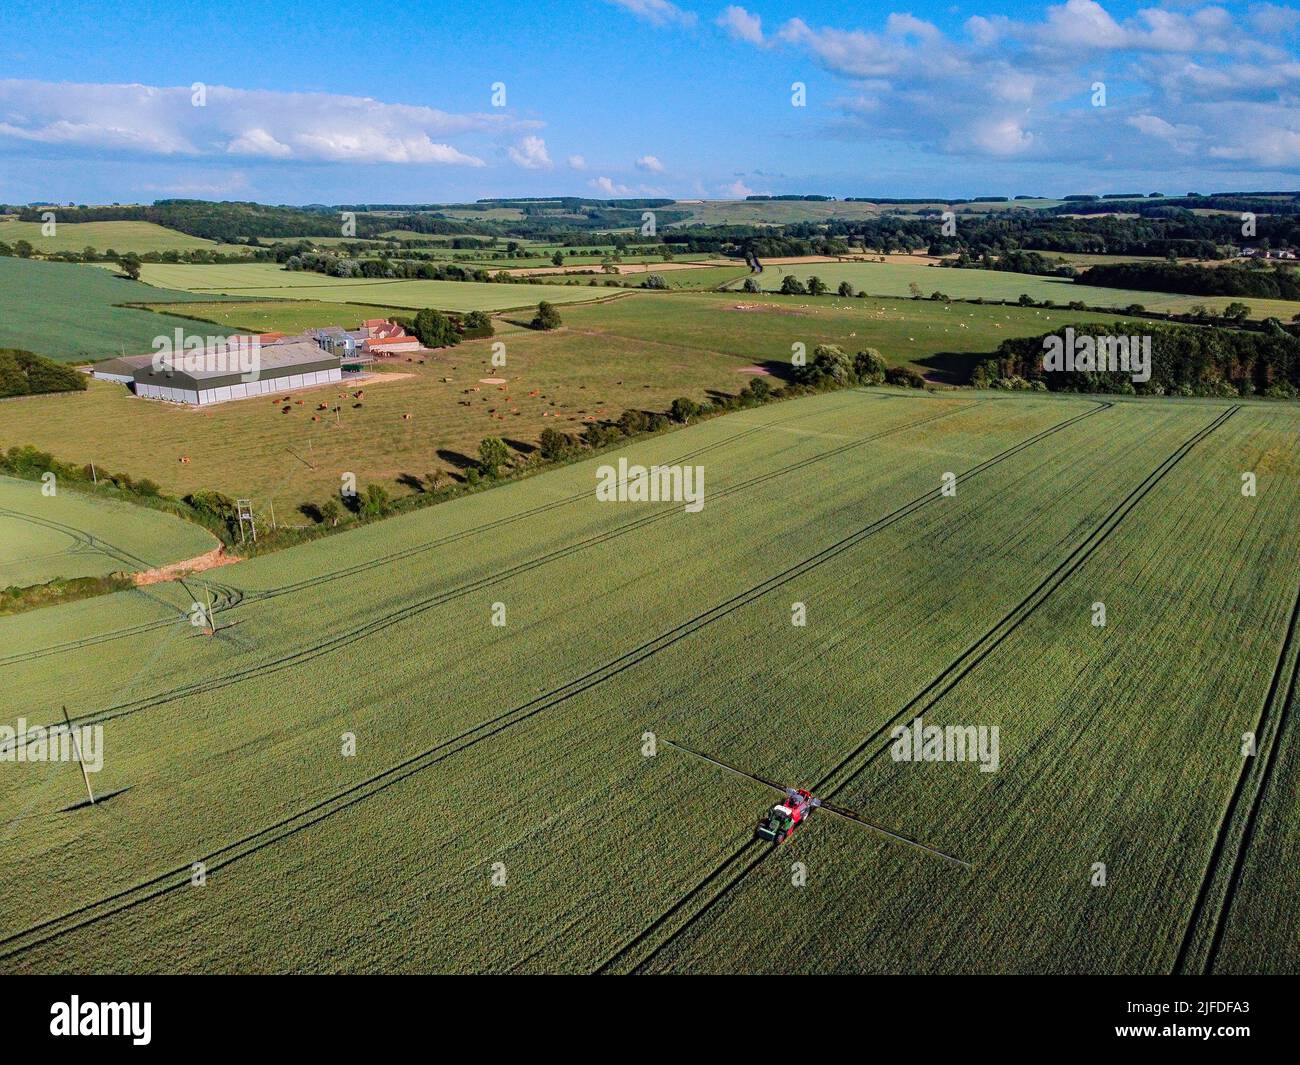 Vista aérea de los 'tranvías' de un agricultor en un campo de maíz en la campiña de North Yorkshire en el noreste de Inglaterra. Foto de stock